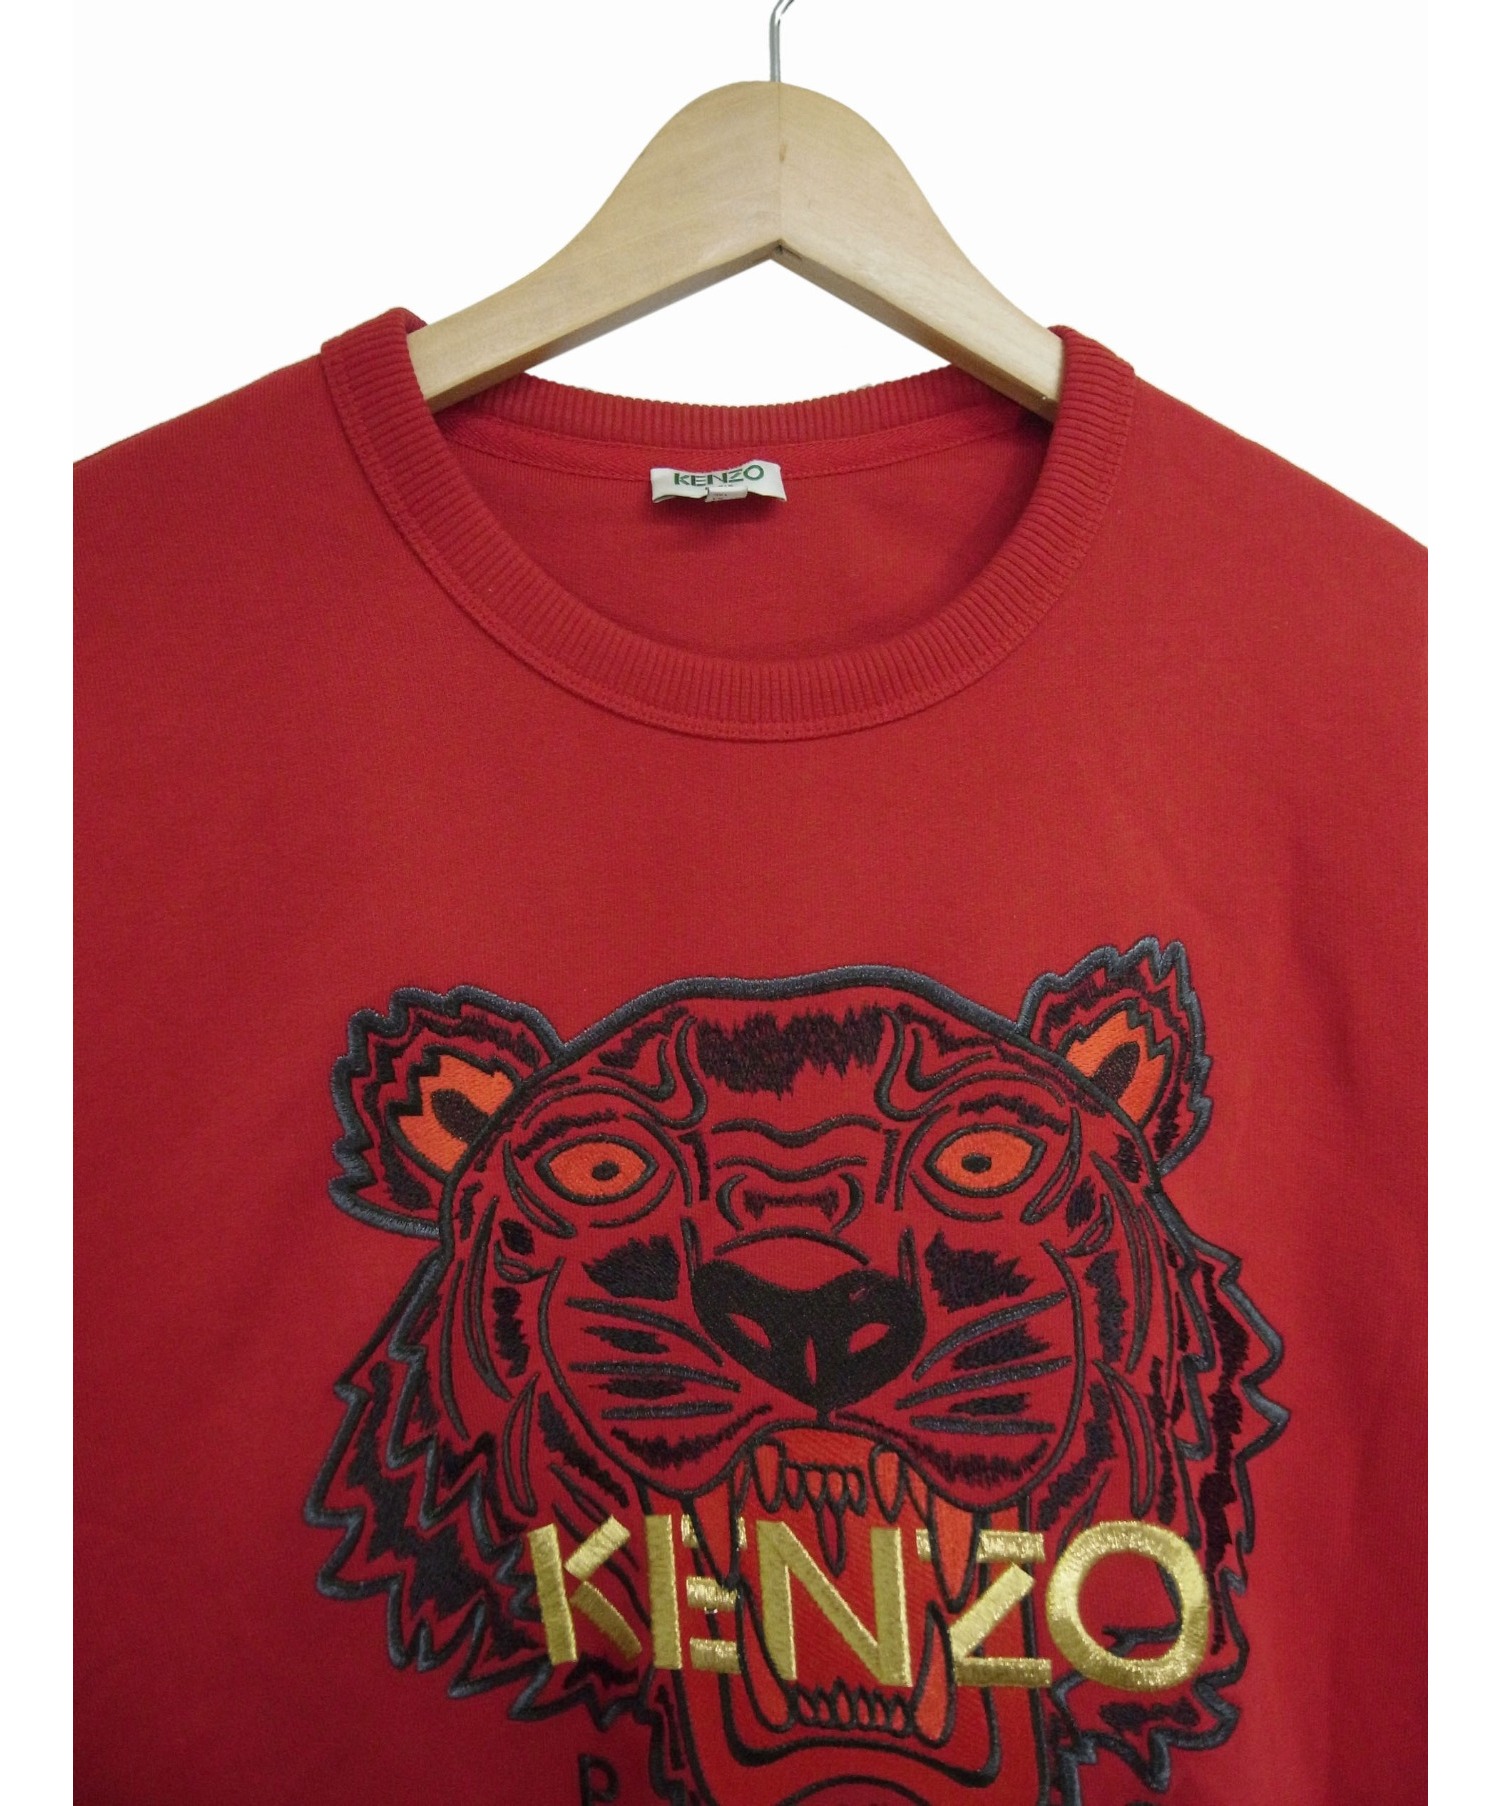 KENZO (ケンゾー) タイガー刺繍スウェット レッド サイズ:L